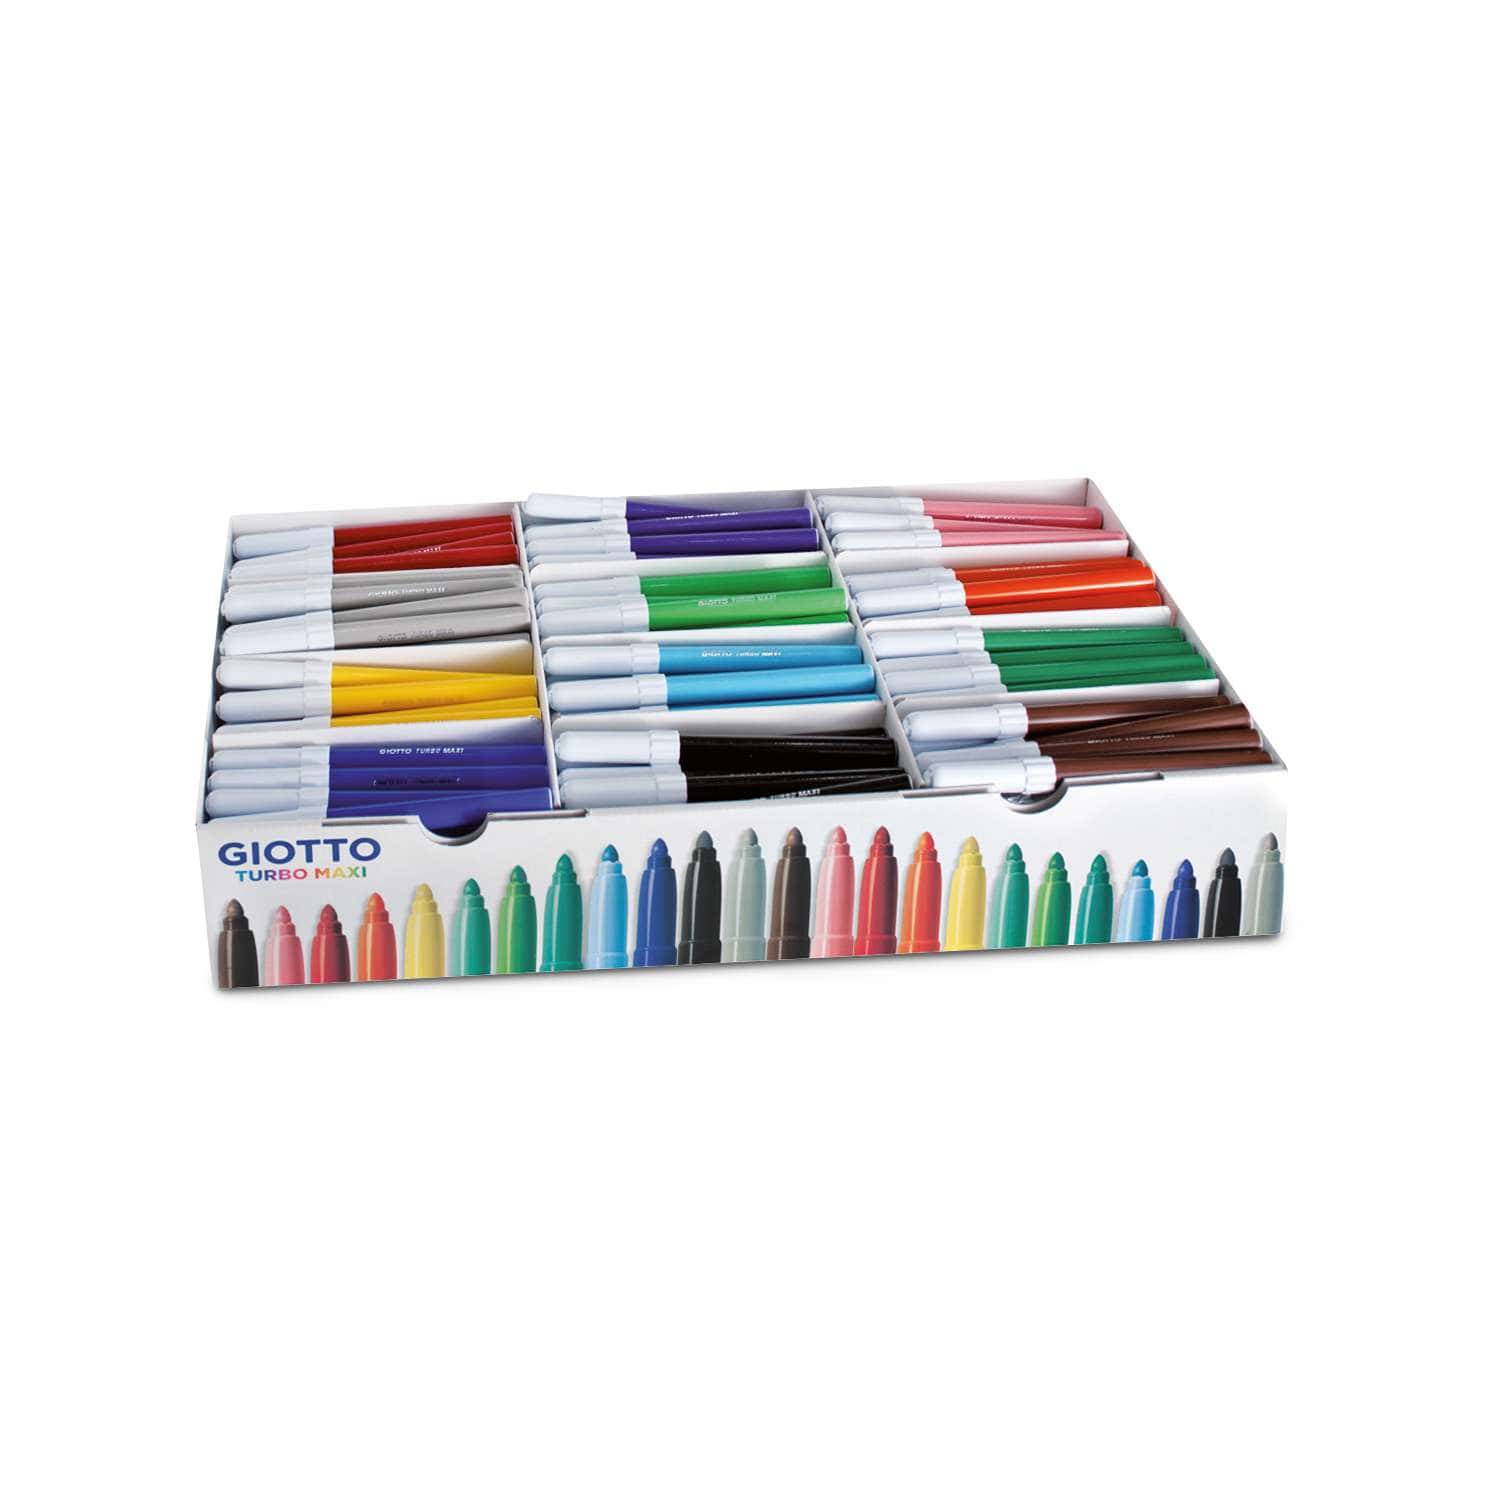 Giotto Turbo Maxi Fibre Pen School Set, 288 Pens